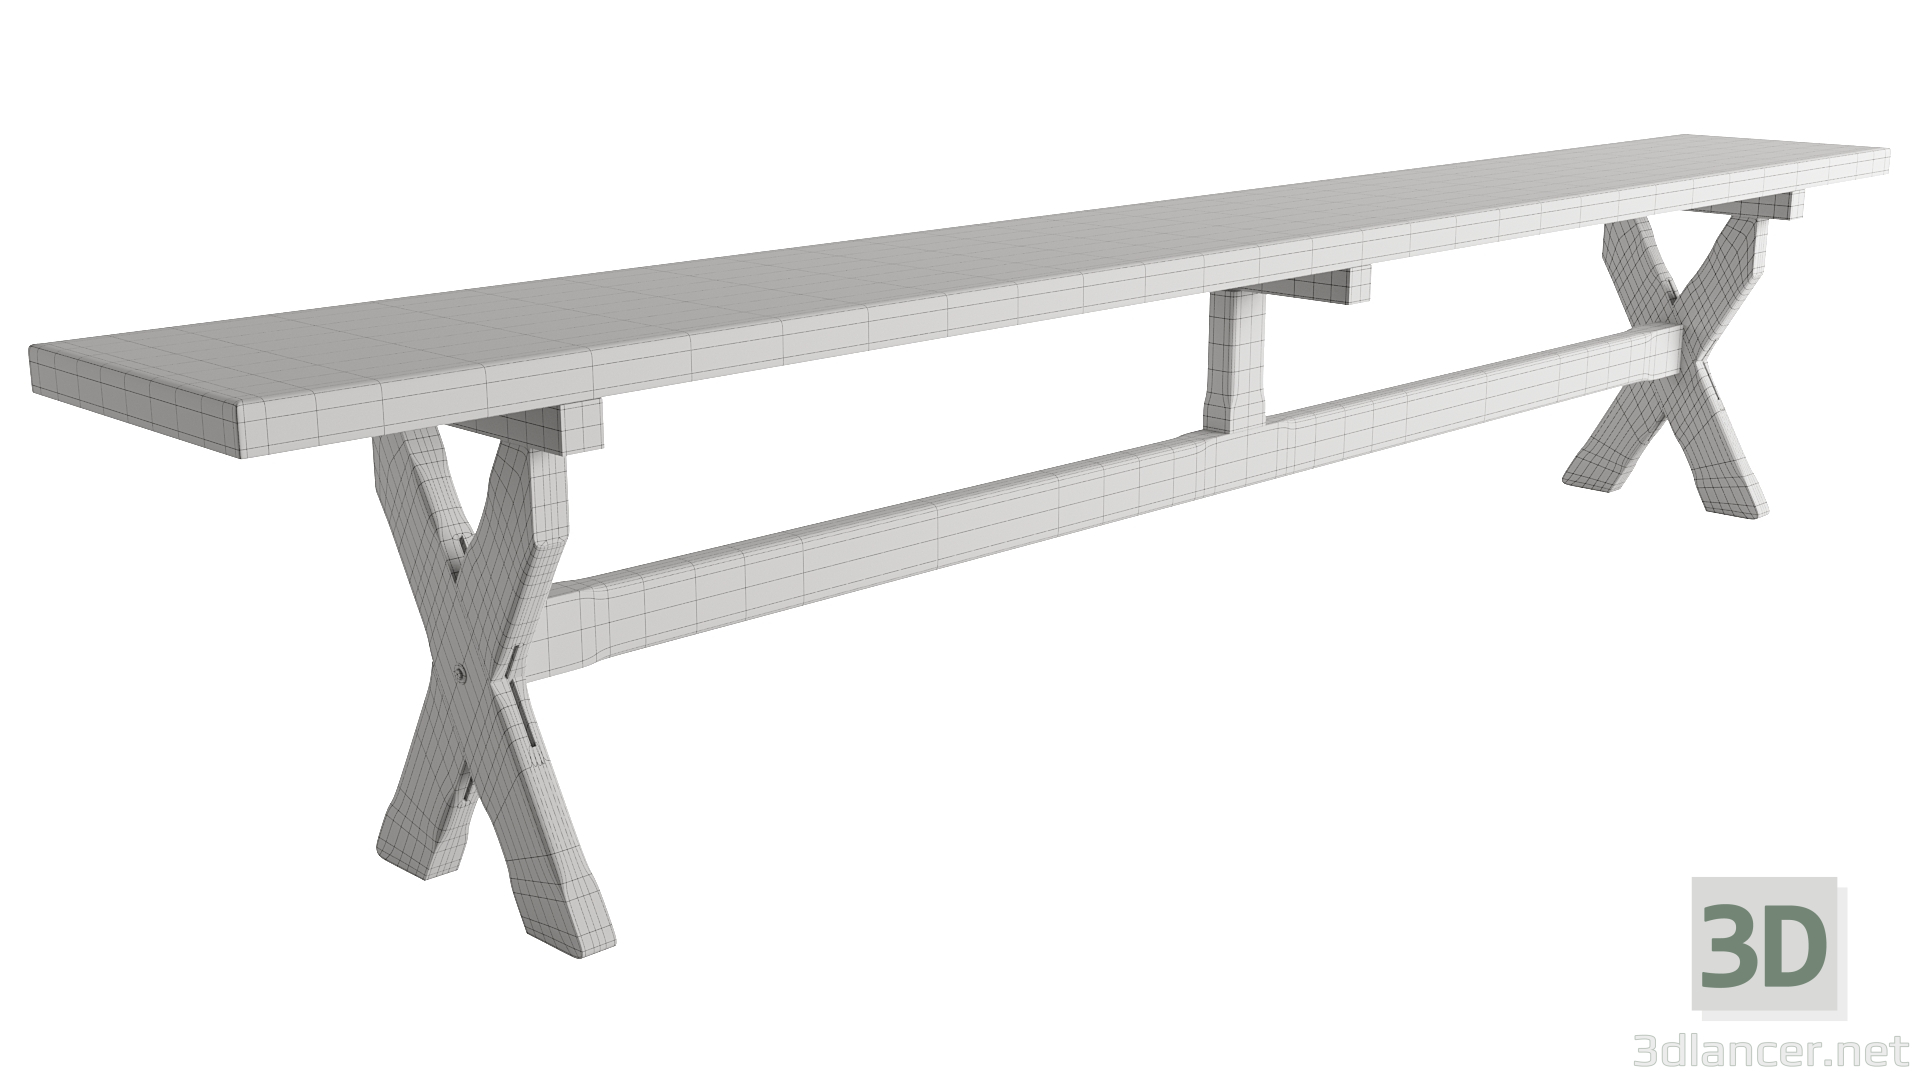 modello 3D di tavolo comprare - rendering